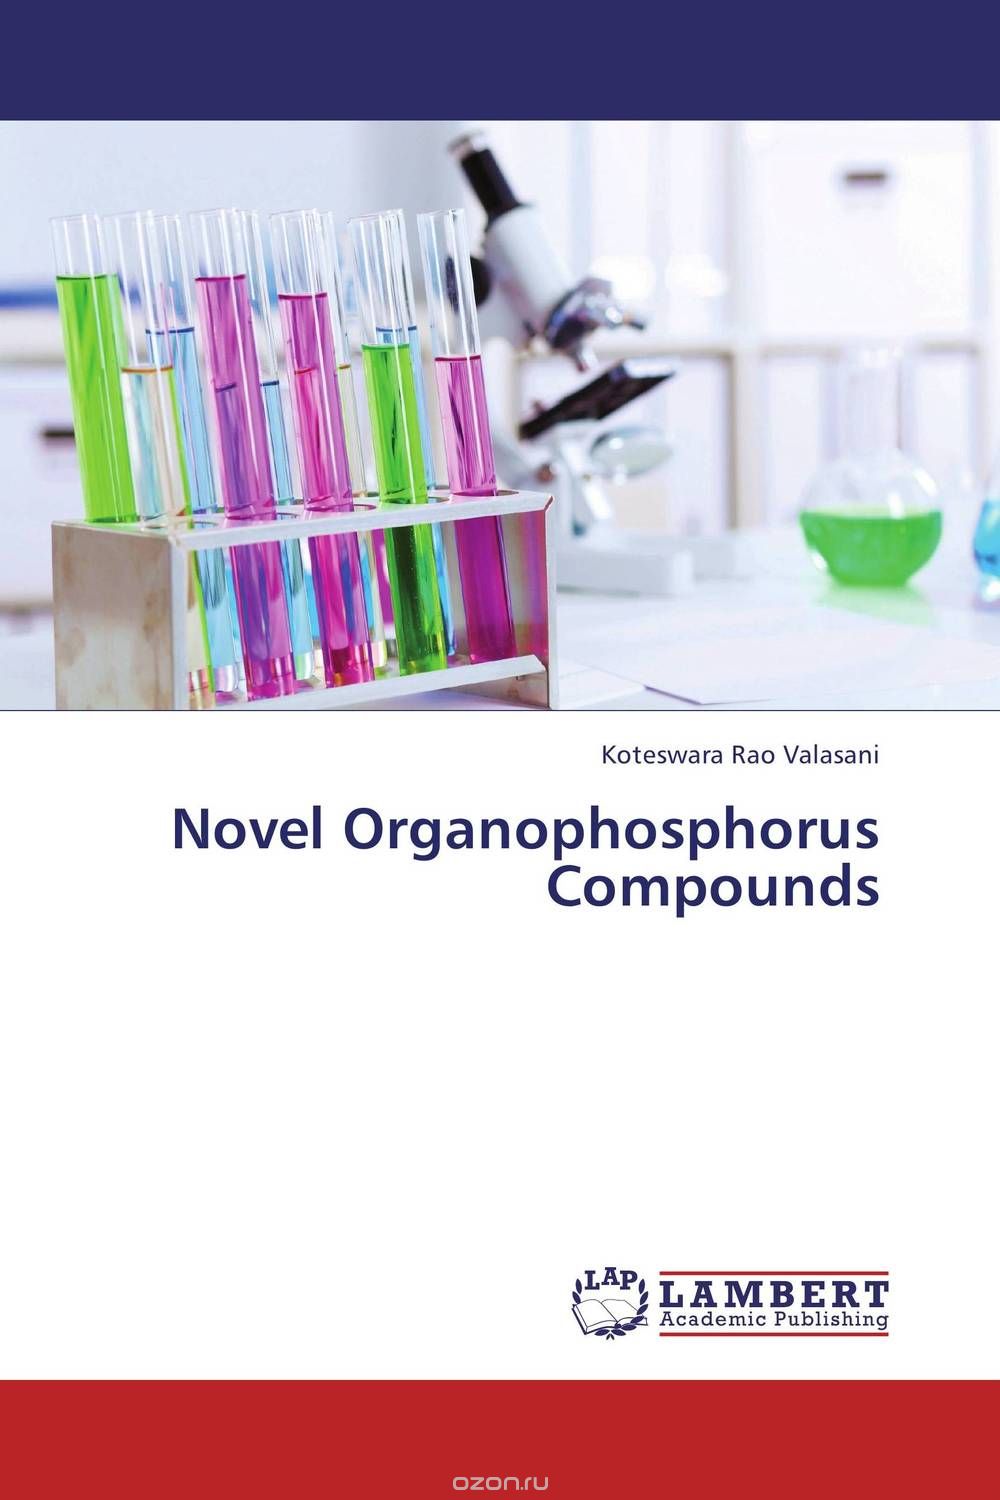 Скачать книгу "Novel Organophosphorus Compounds"